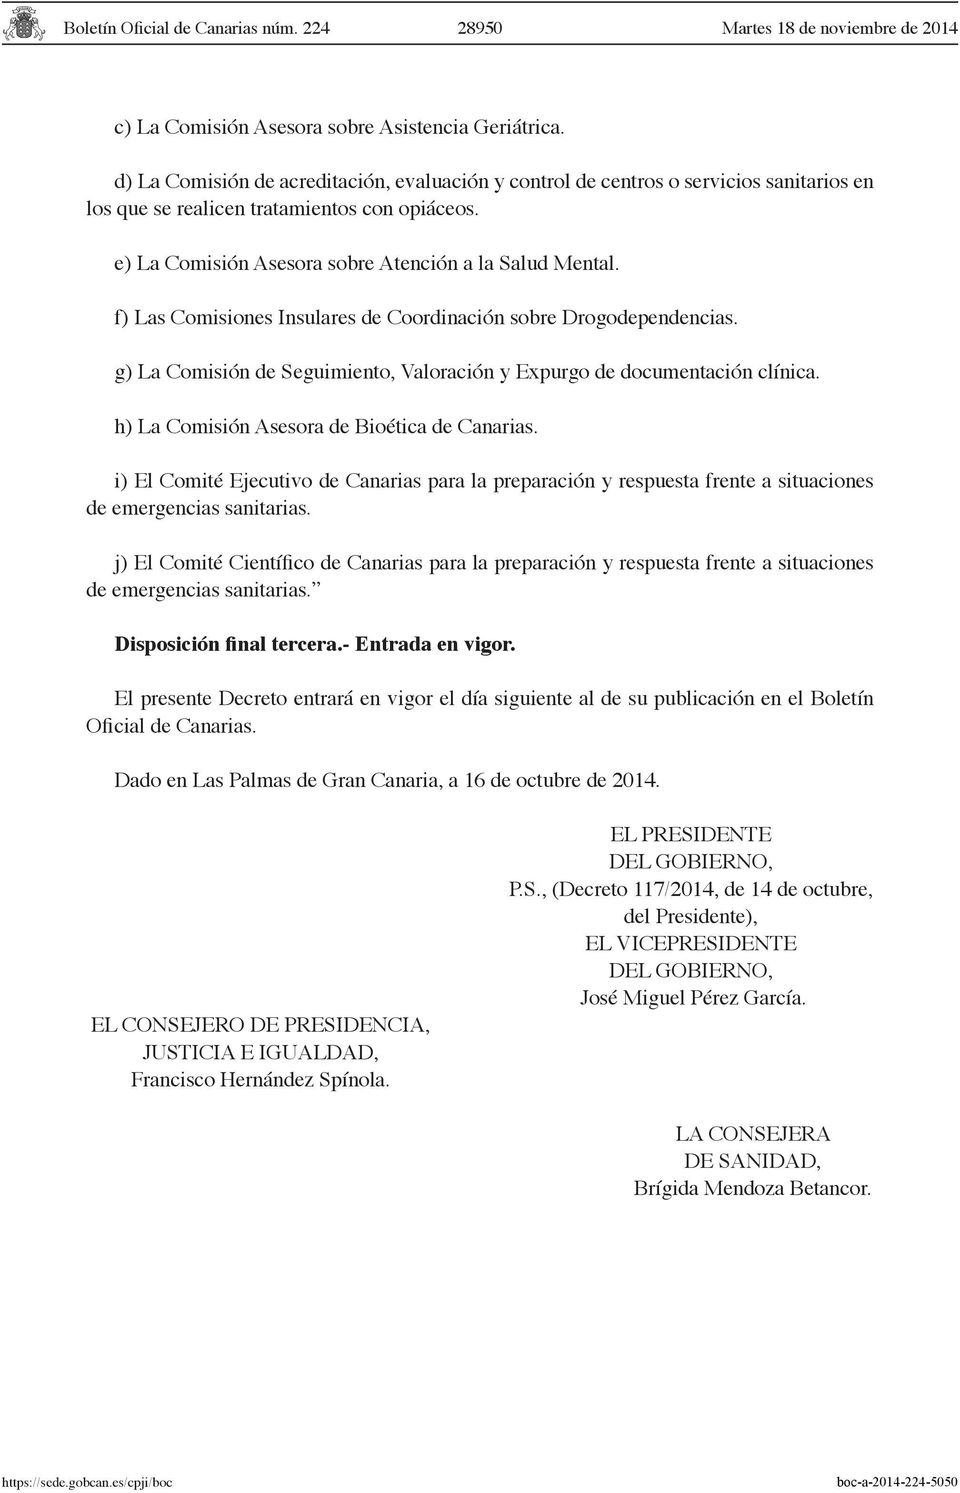 g) La Comisión de Seguimiento, Valoración y Expurgo de documentación clínica. h) La Comisión Asesora de Bioética de Canarias.